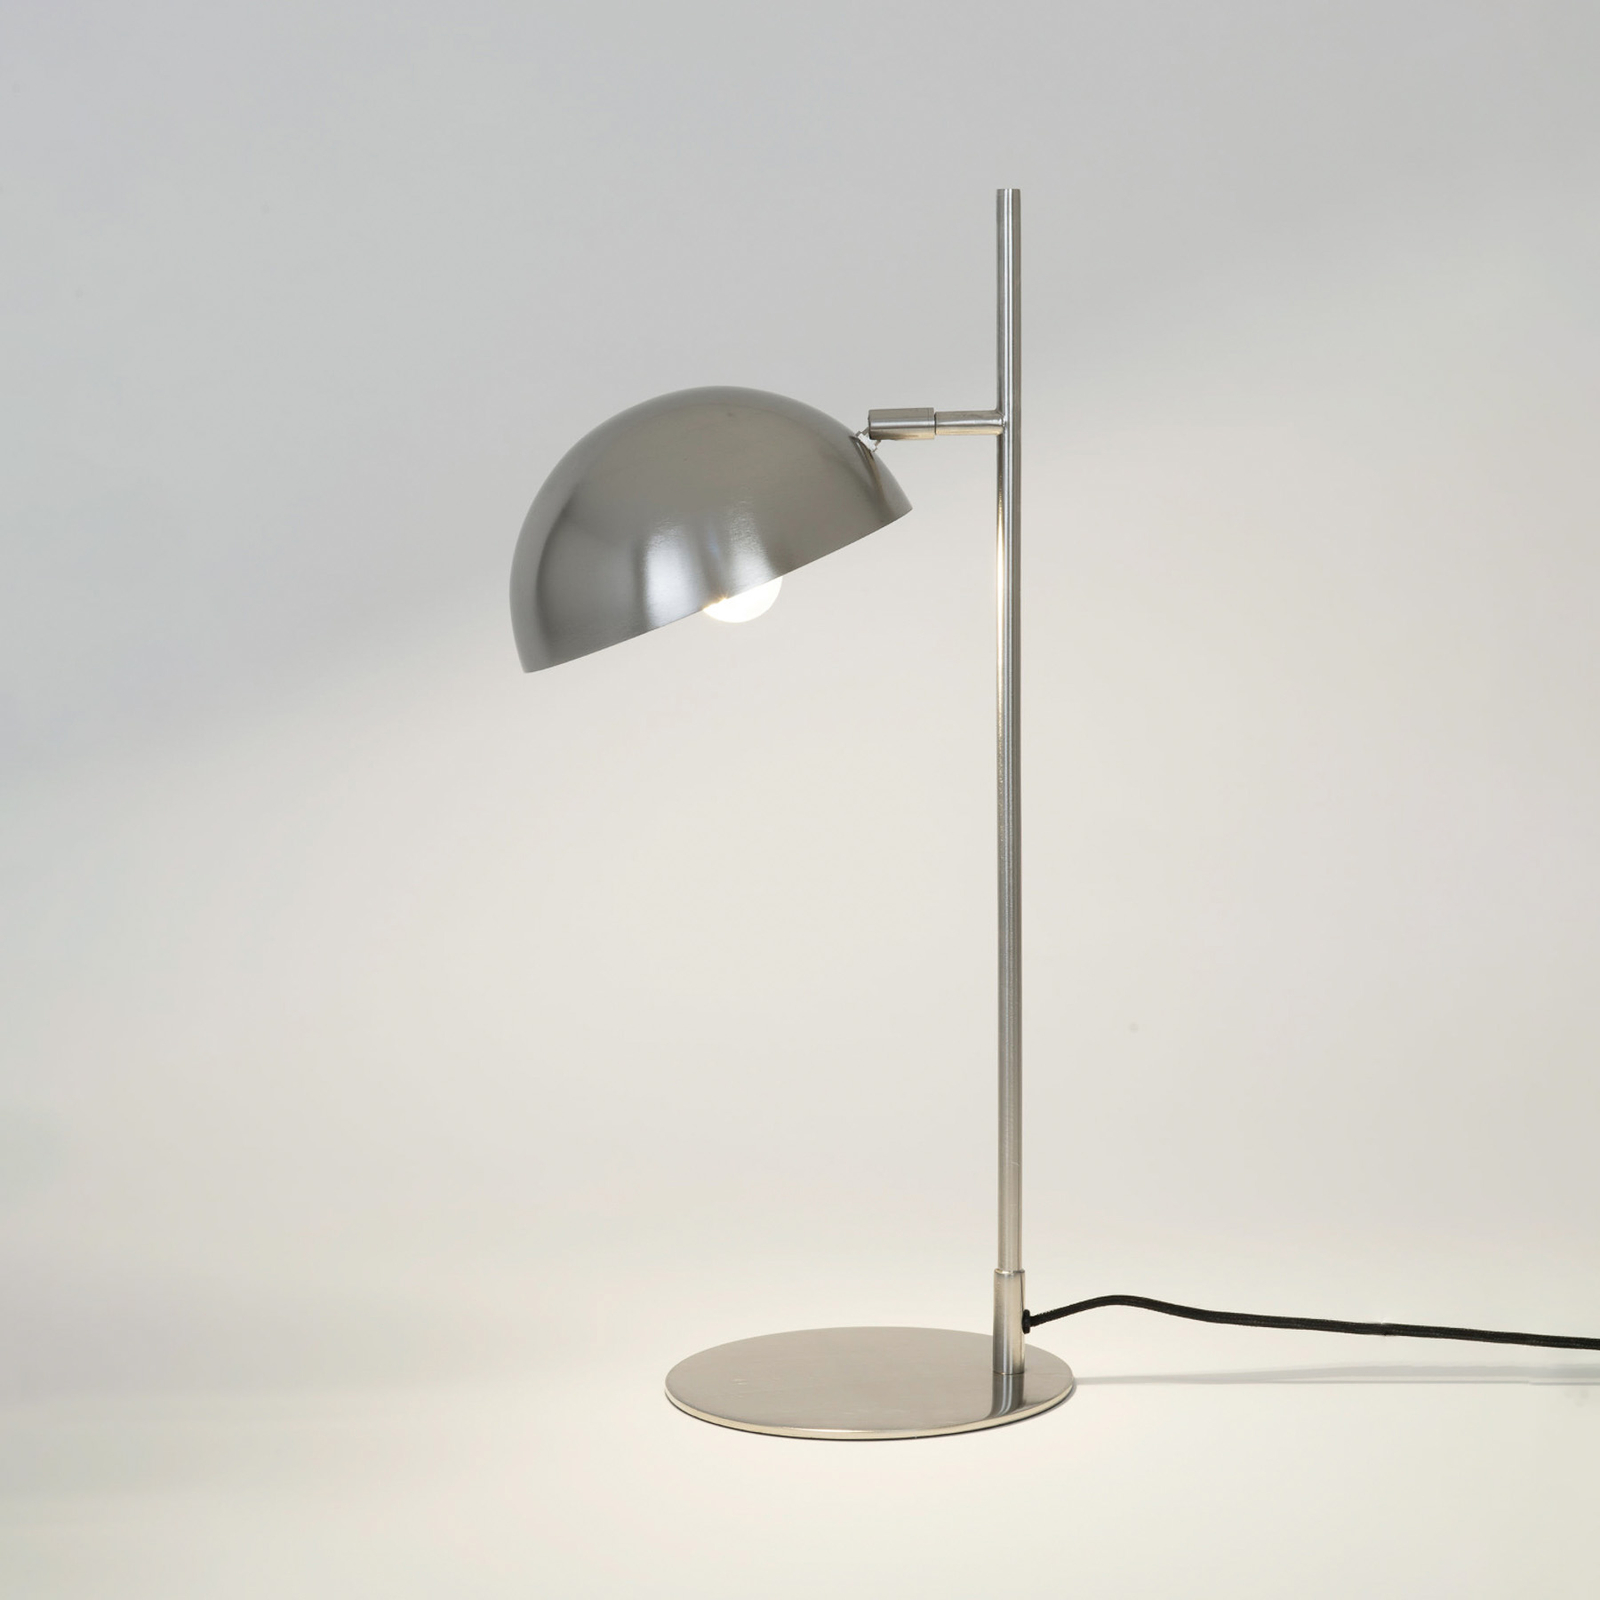 Lampa stołowa Miro, kolor srebrny, wysokość 58 cm, żelazo/mosiądz